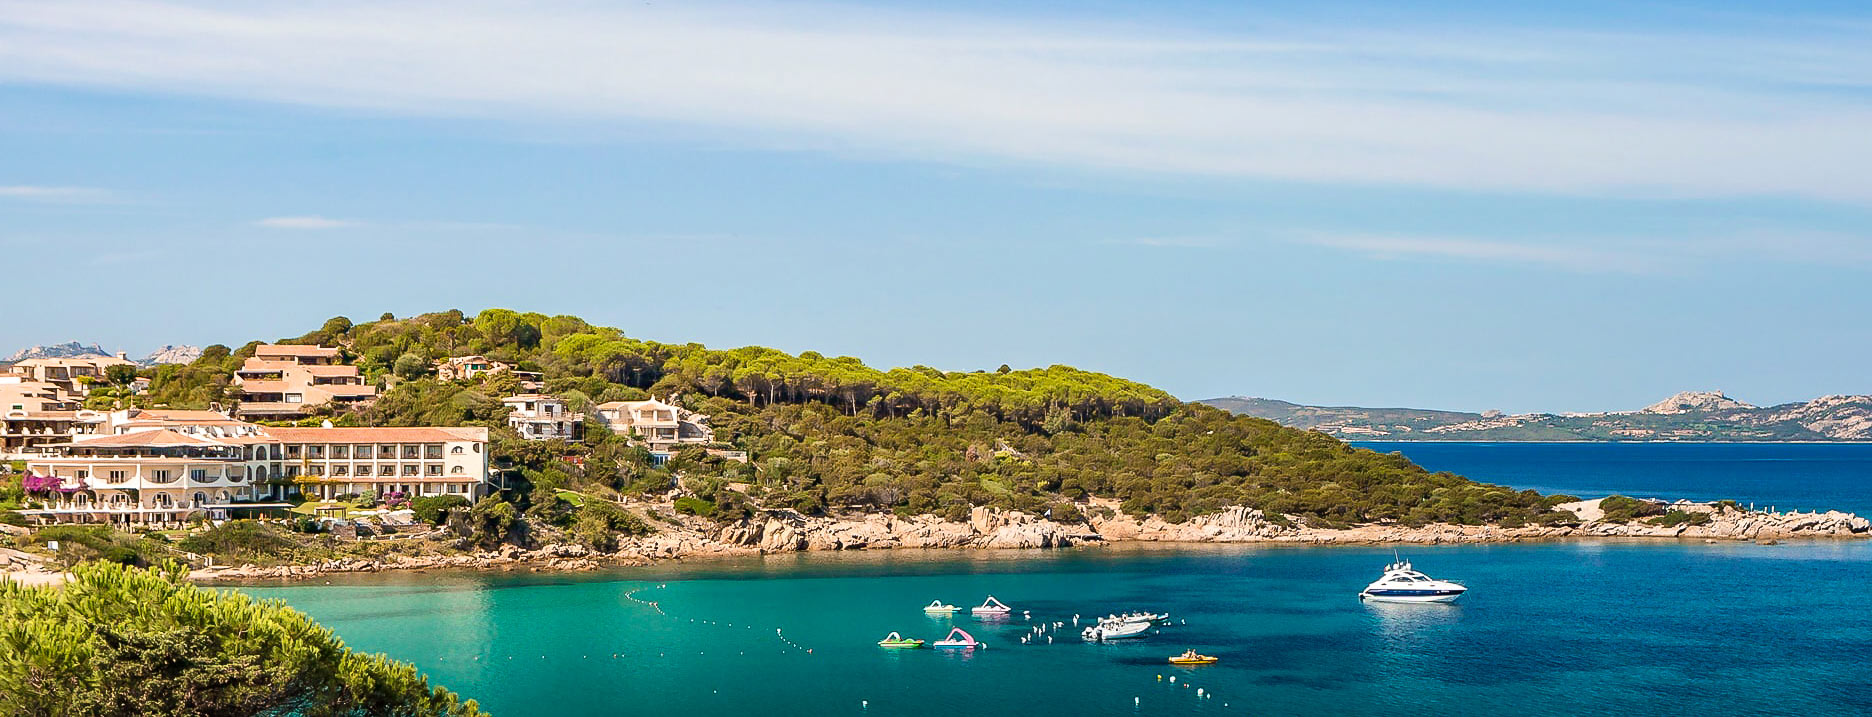 Costa Smeralda: 10 best to | Best beaches Hotels | Sardinia